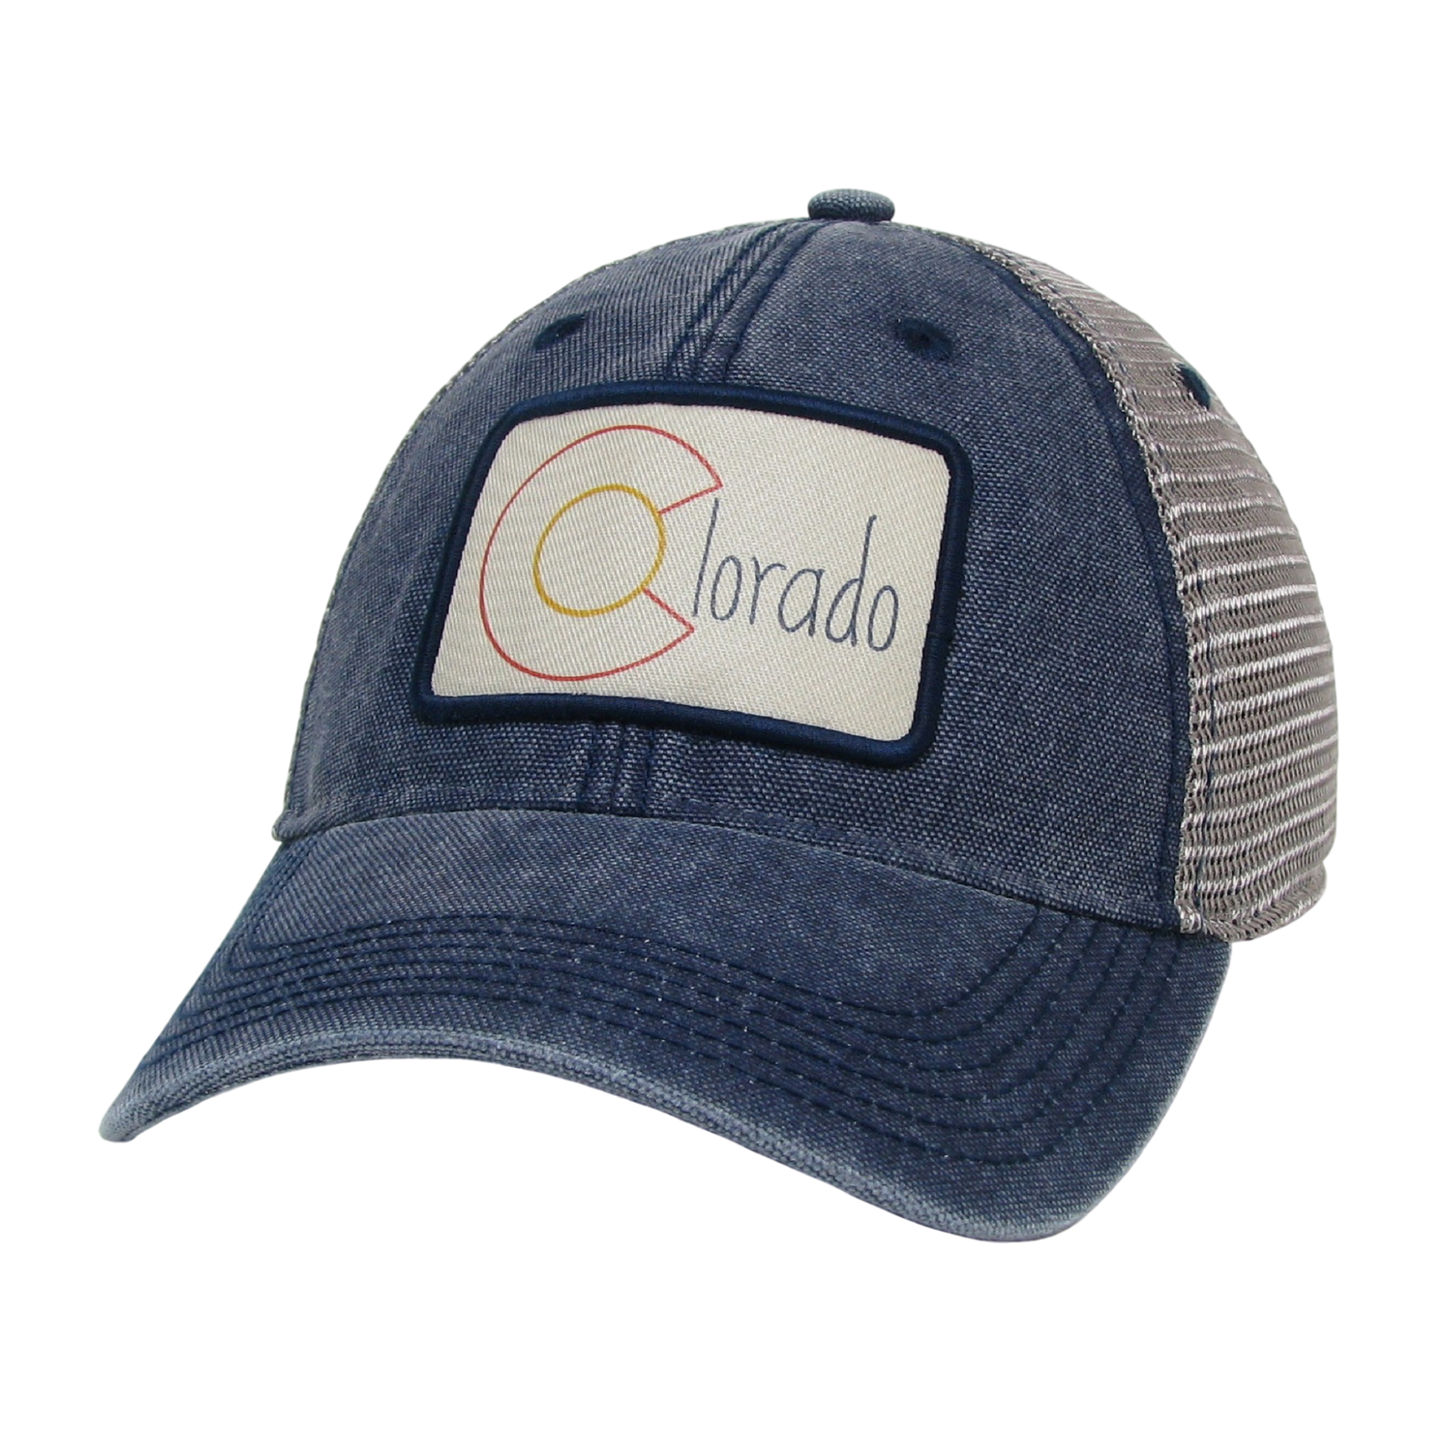 Colorado Dashboard Trucker Hat in Navy/Grey